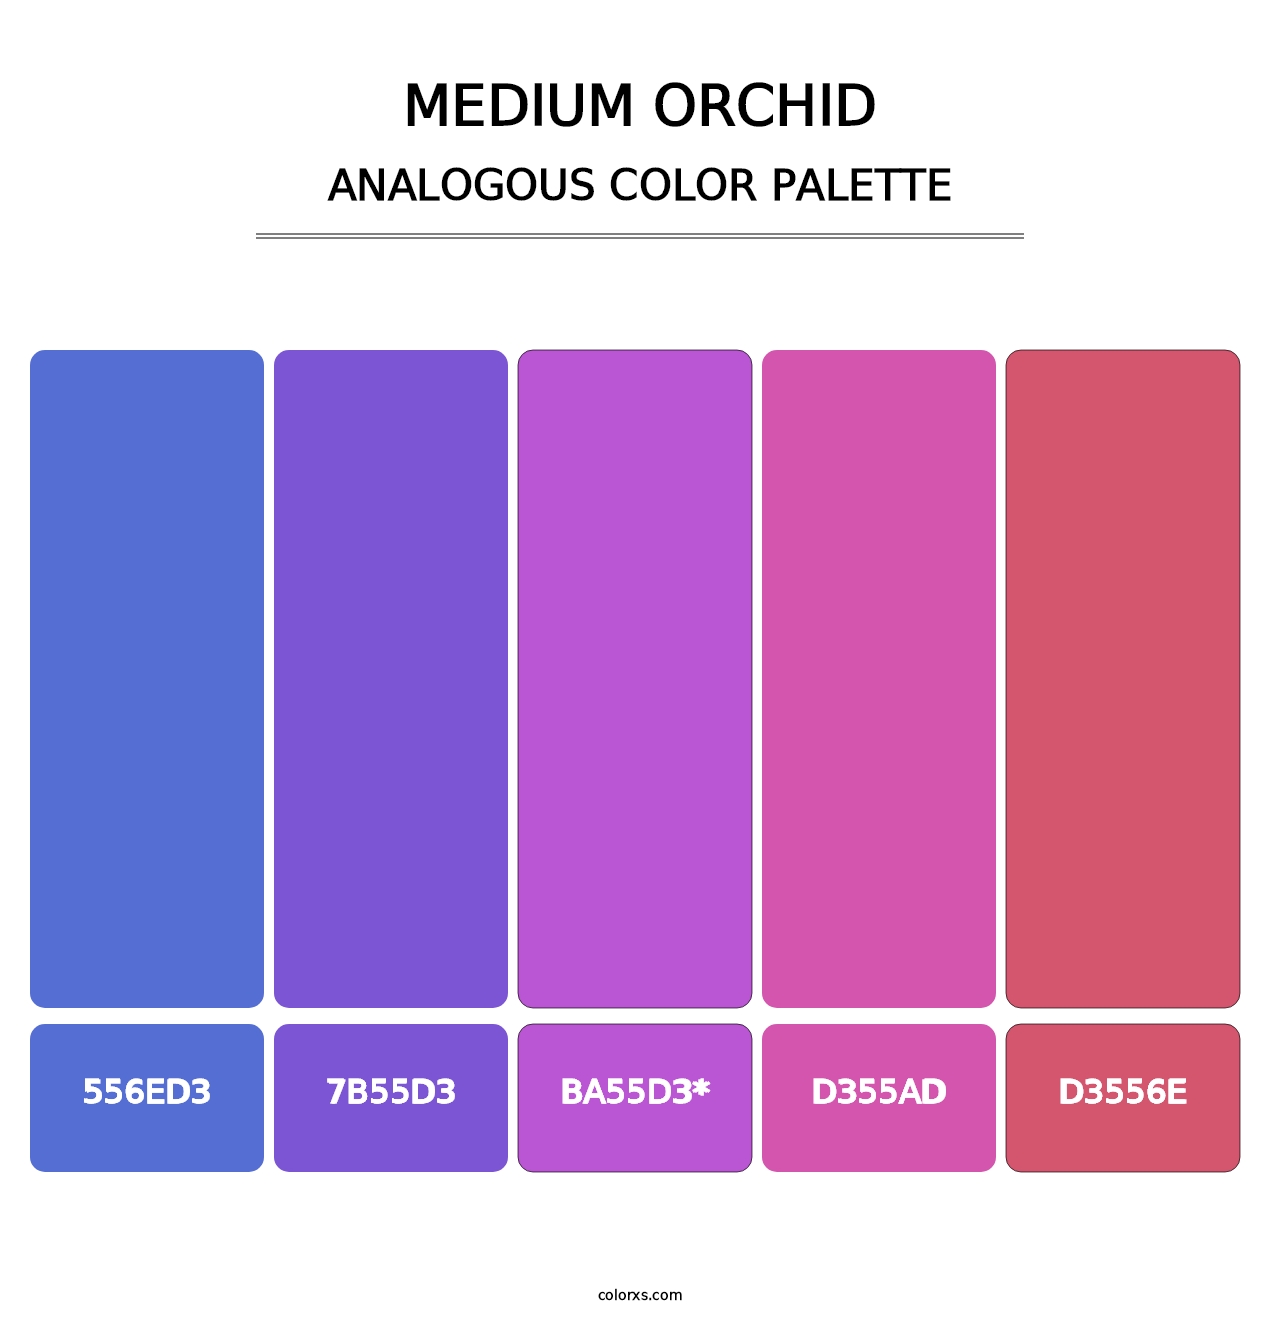 Medium Orchid - Analogous Color Palette